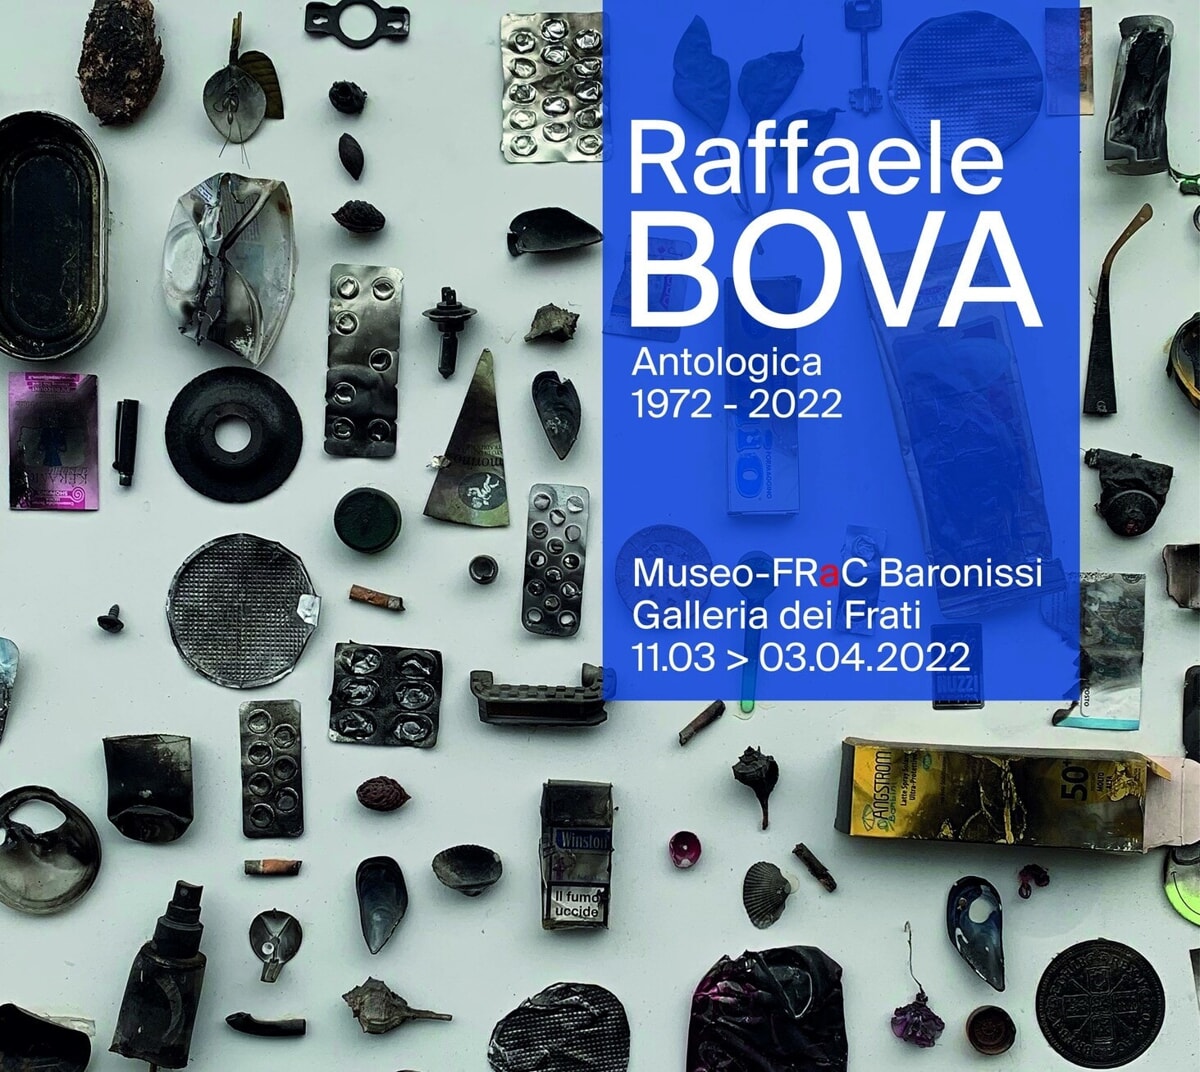 Raffaele Bova, antologica: mostra al Museo FRaC di Baronissi